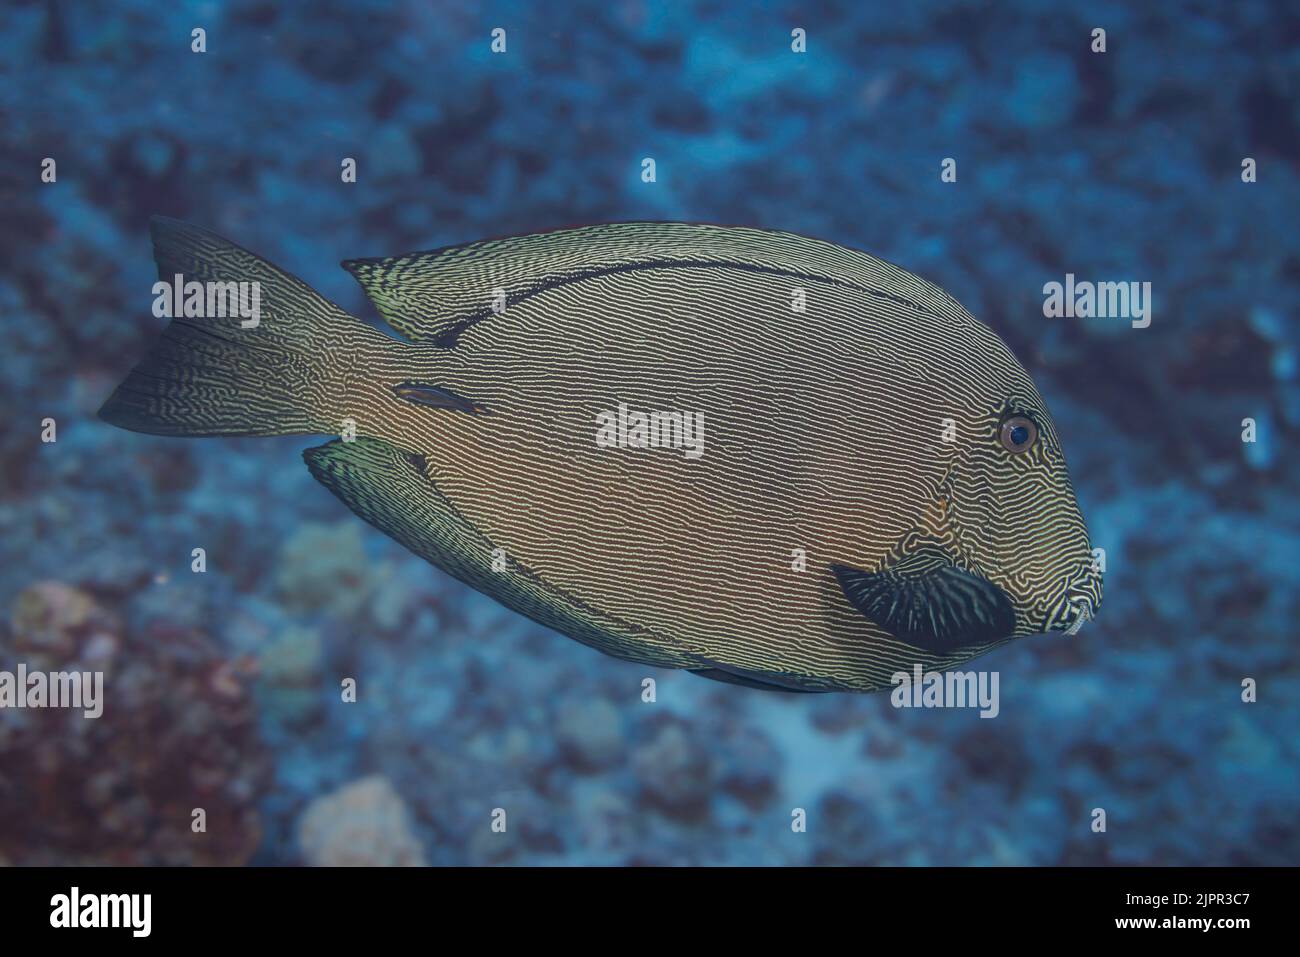 El nombre científico del pez surgeonso negro, Ctenochaetus hawaiiensis, sugiere que es endémico de Hawai donde fue fotografiado, althou Foto de stock